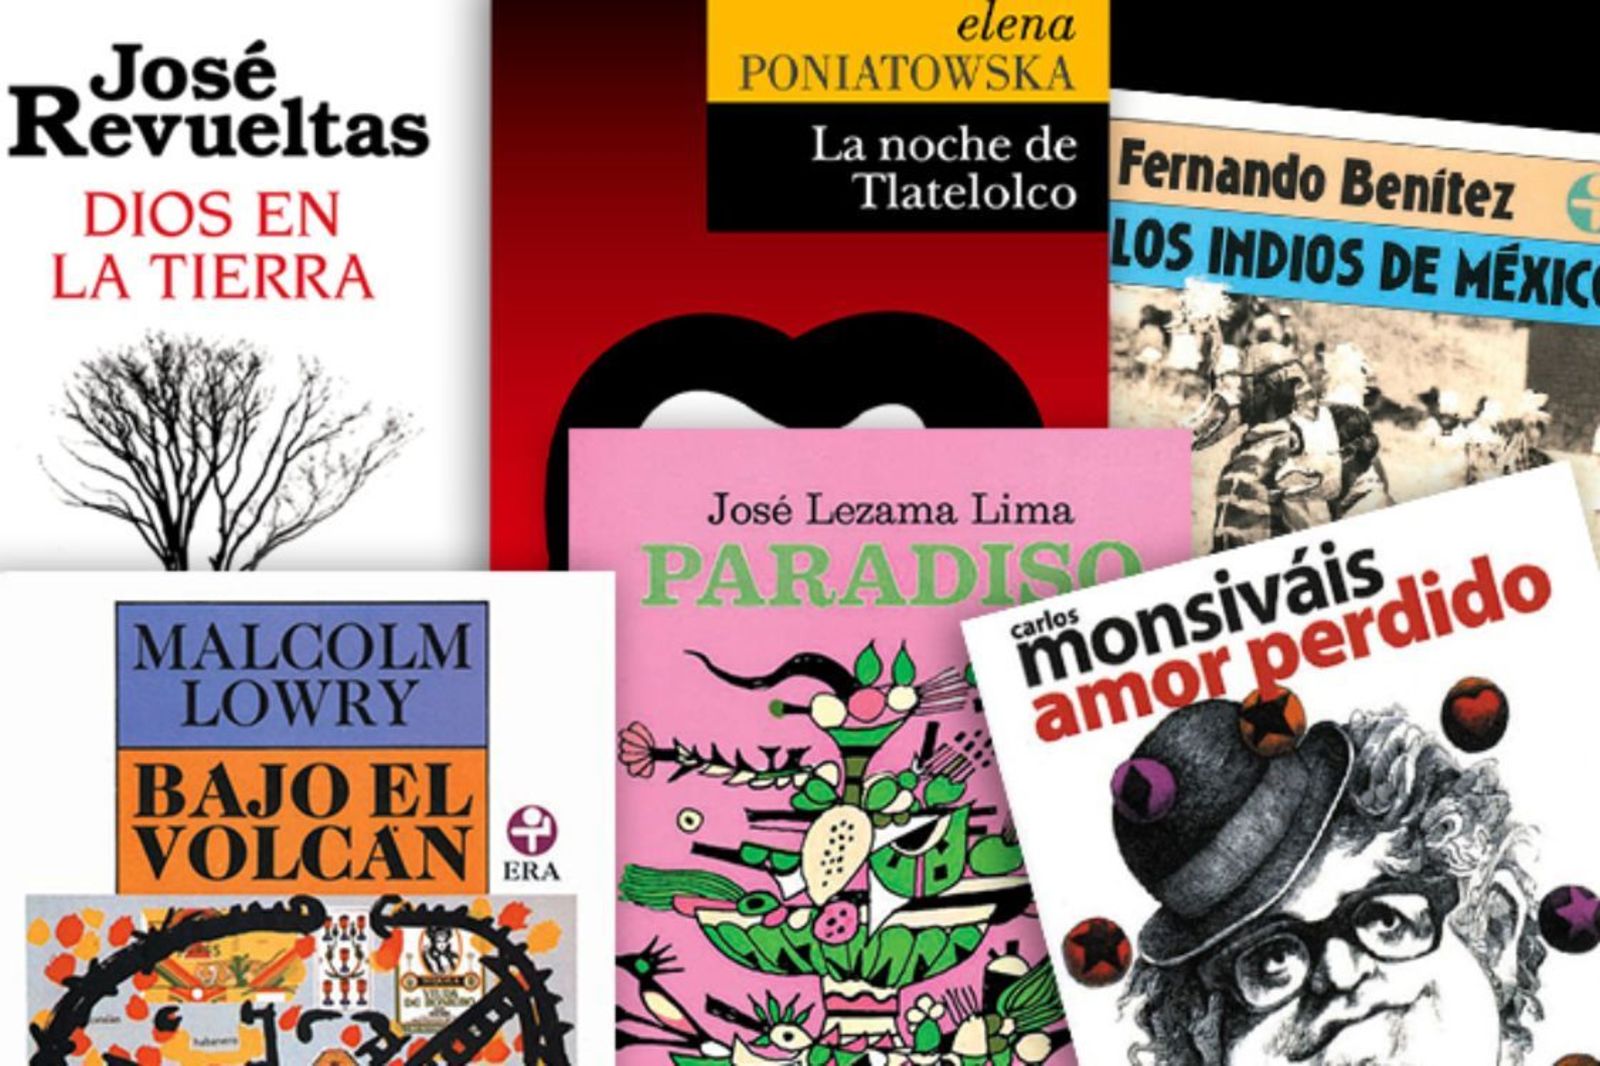 Novedades. Editorial Era comparte sus novedades literarias para fin de año, ediciones que esperan tengan un encuentro con los lectores mexicanos en estas vacaciones.